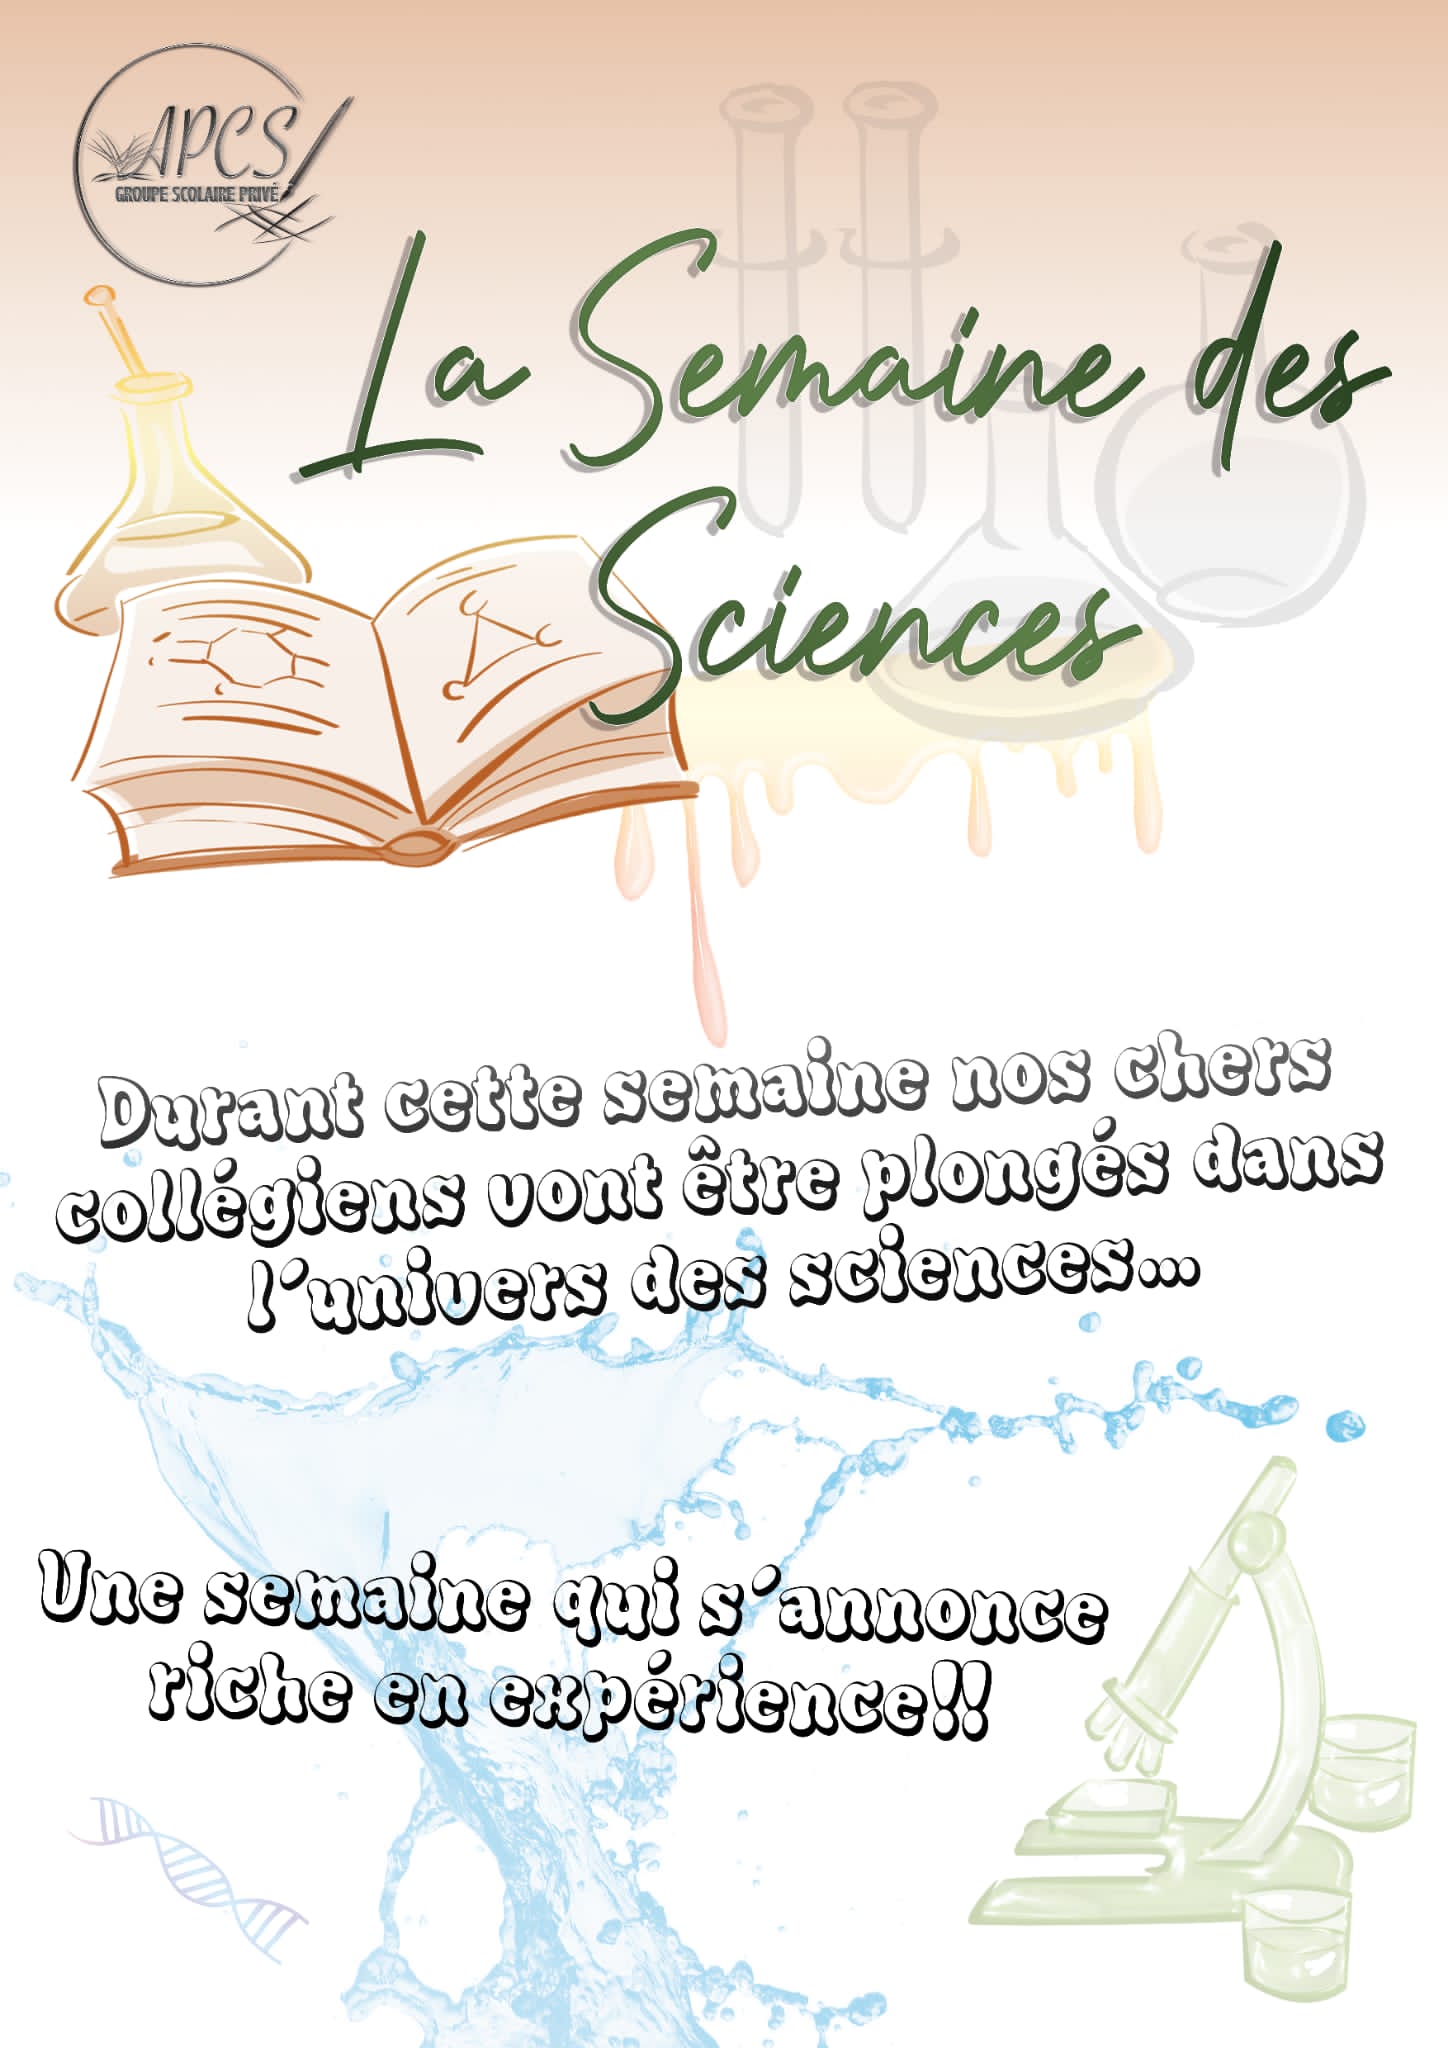 Affiche de la semaine des sciences à l'école APCS de Sevran